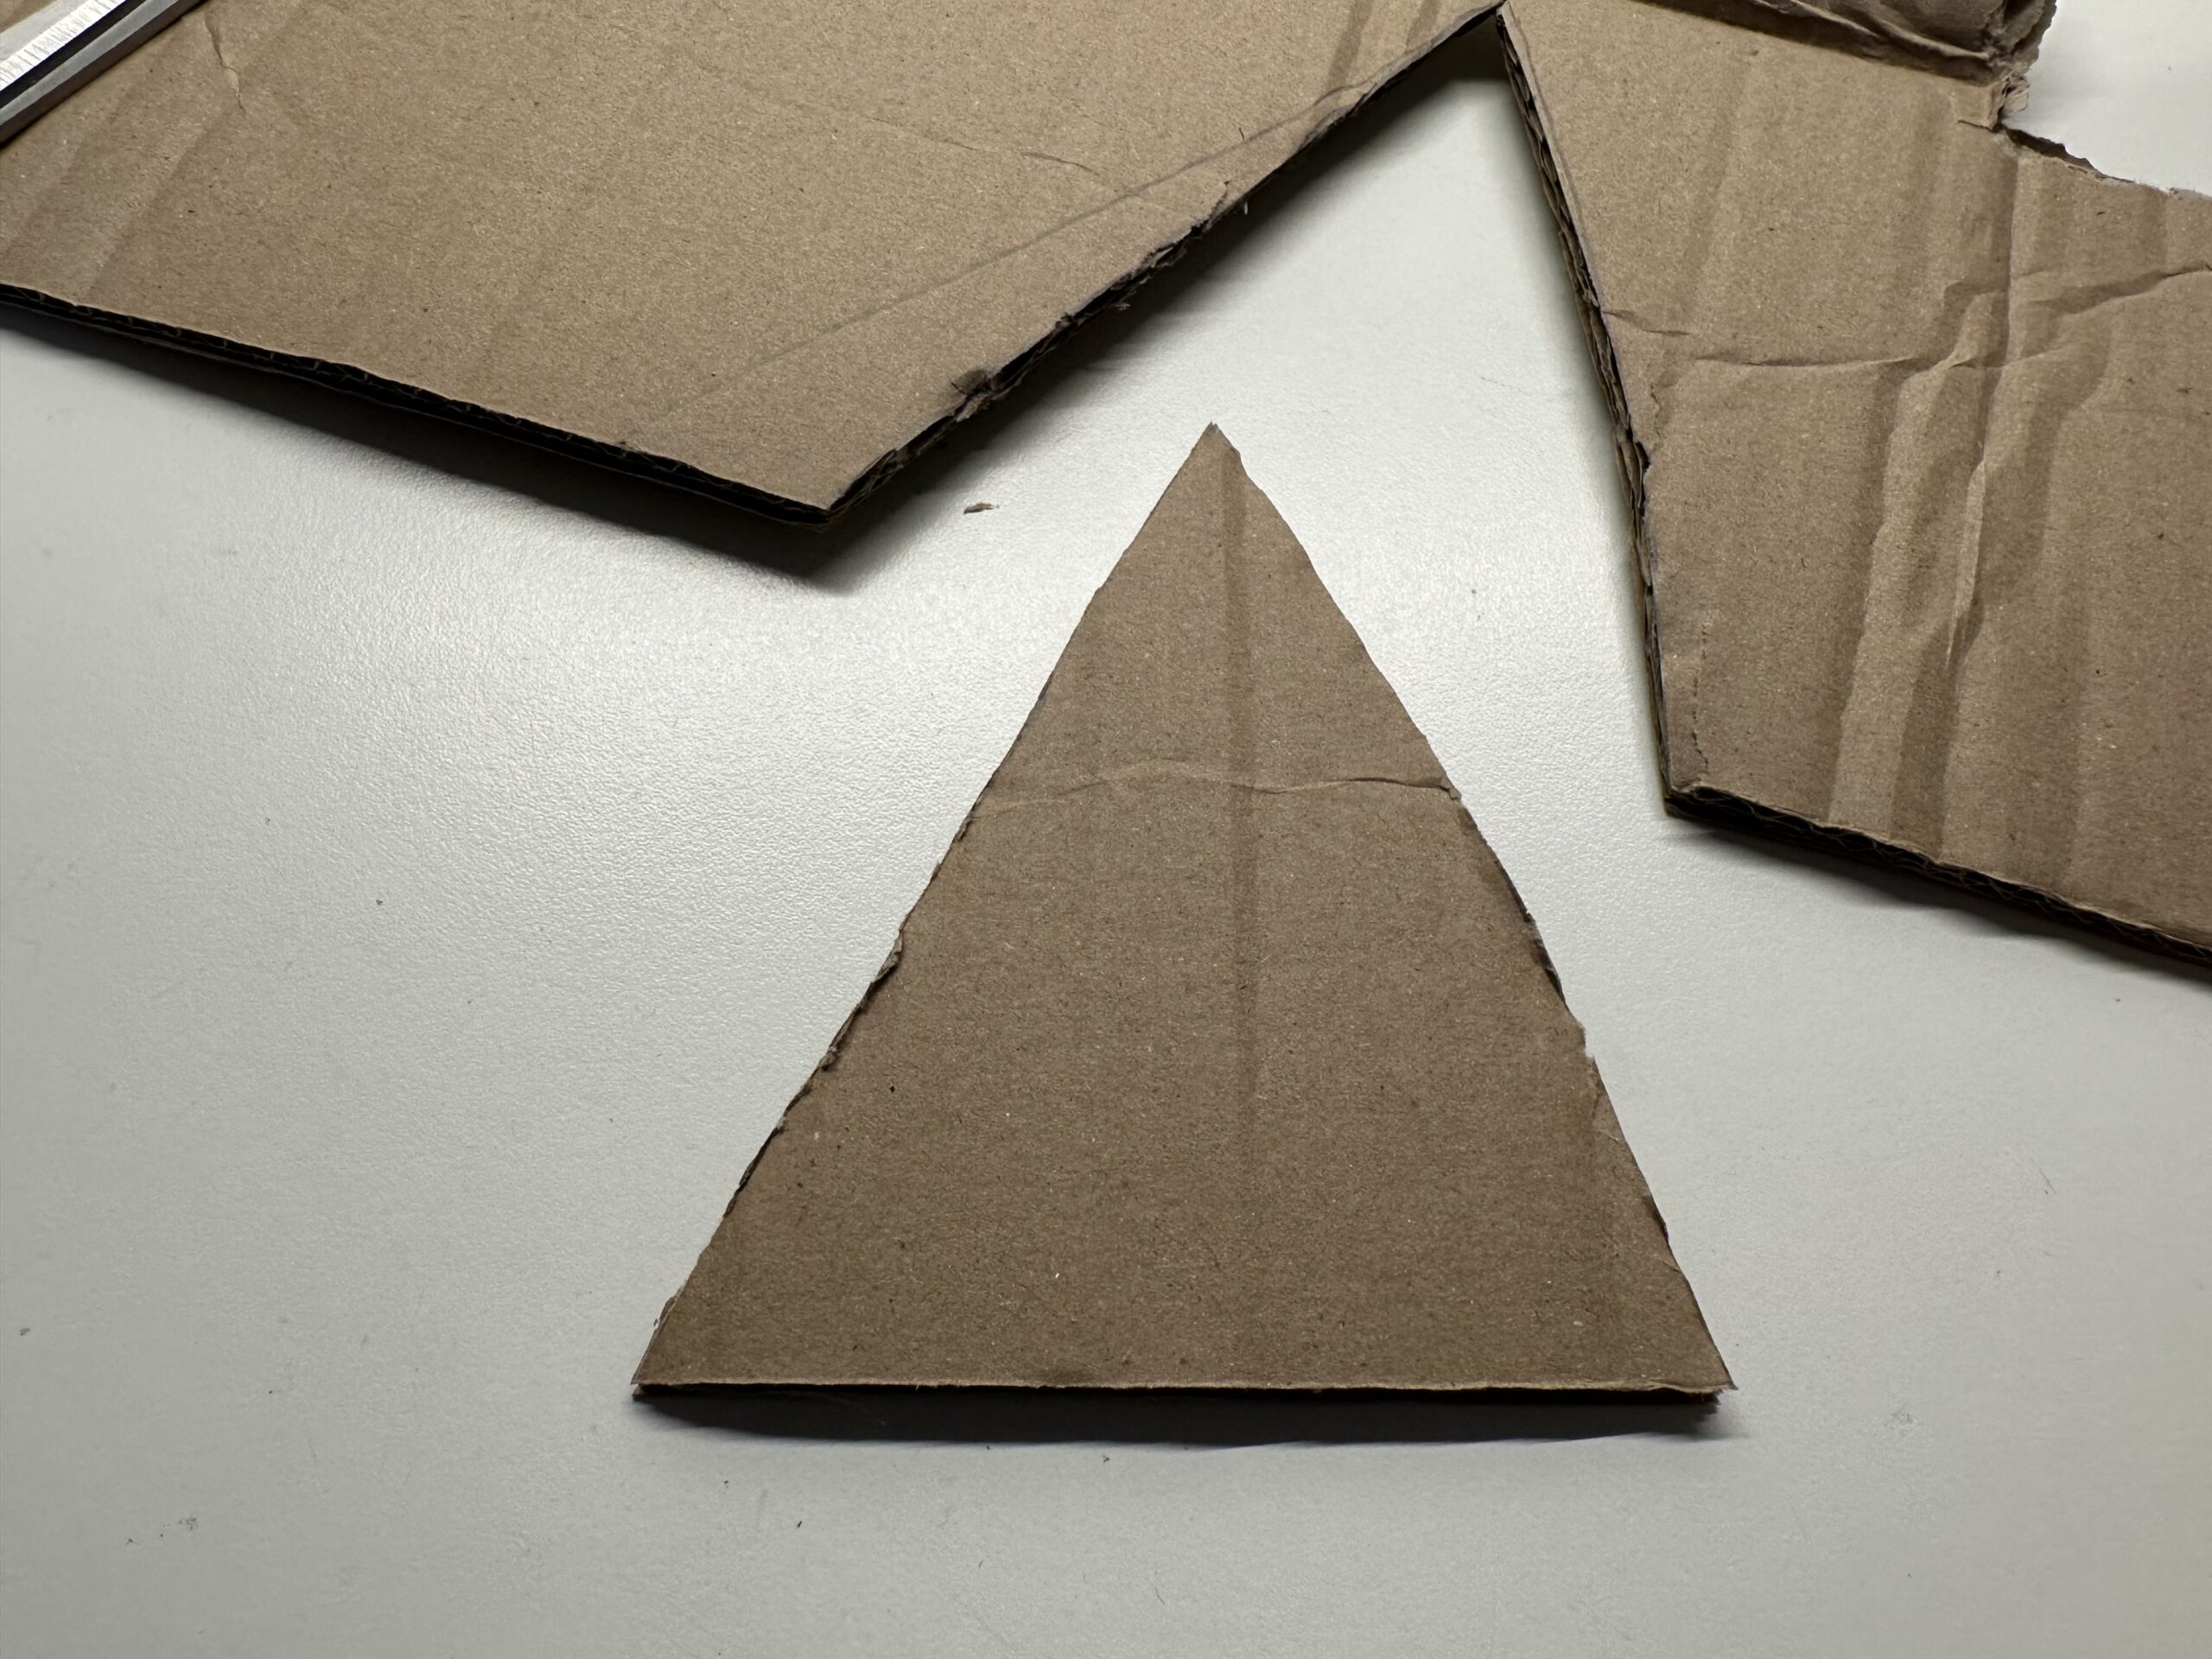 Bild zum Schritt 4 für das Bastel- und DIY-Abenteuer für Kinder: 'Schneidet das Dreieck mit der Schere aus.'